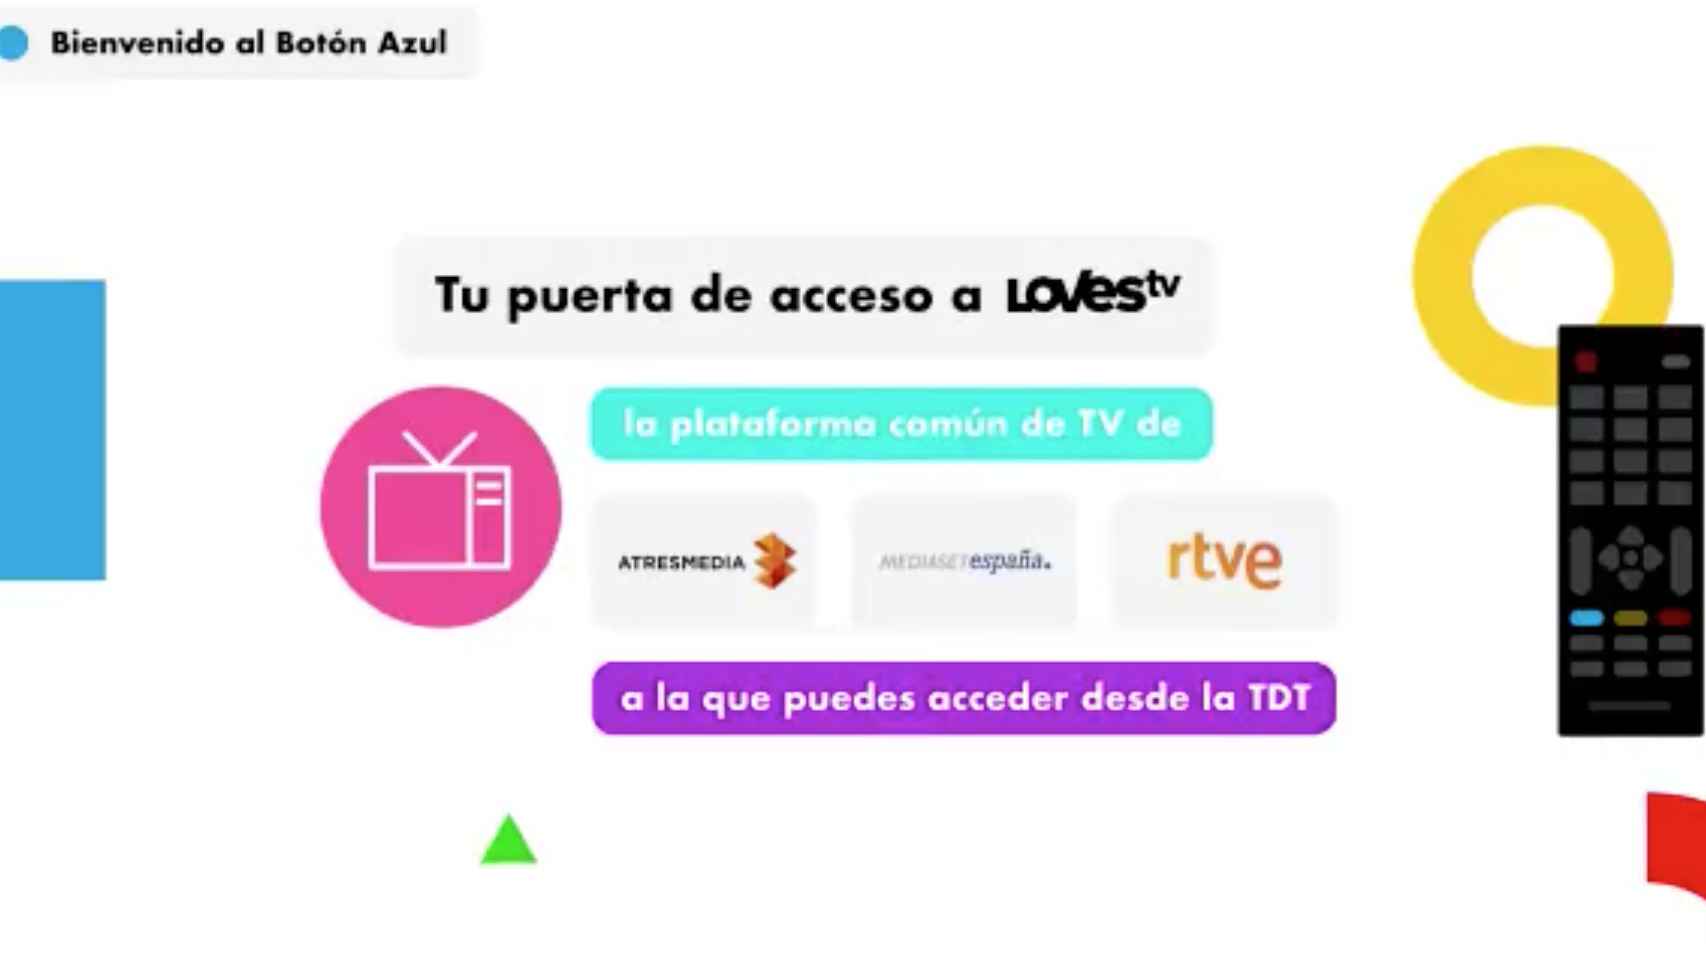 LovesTV.